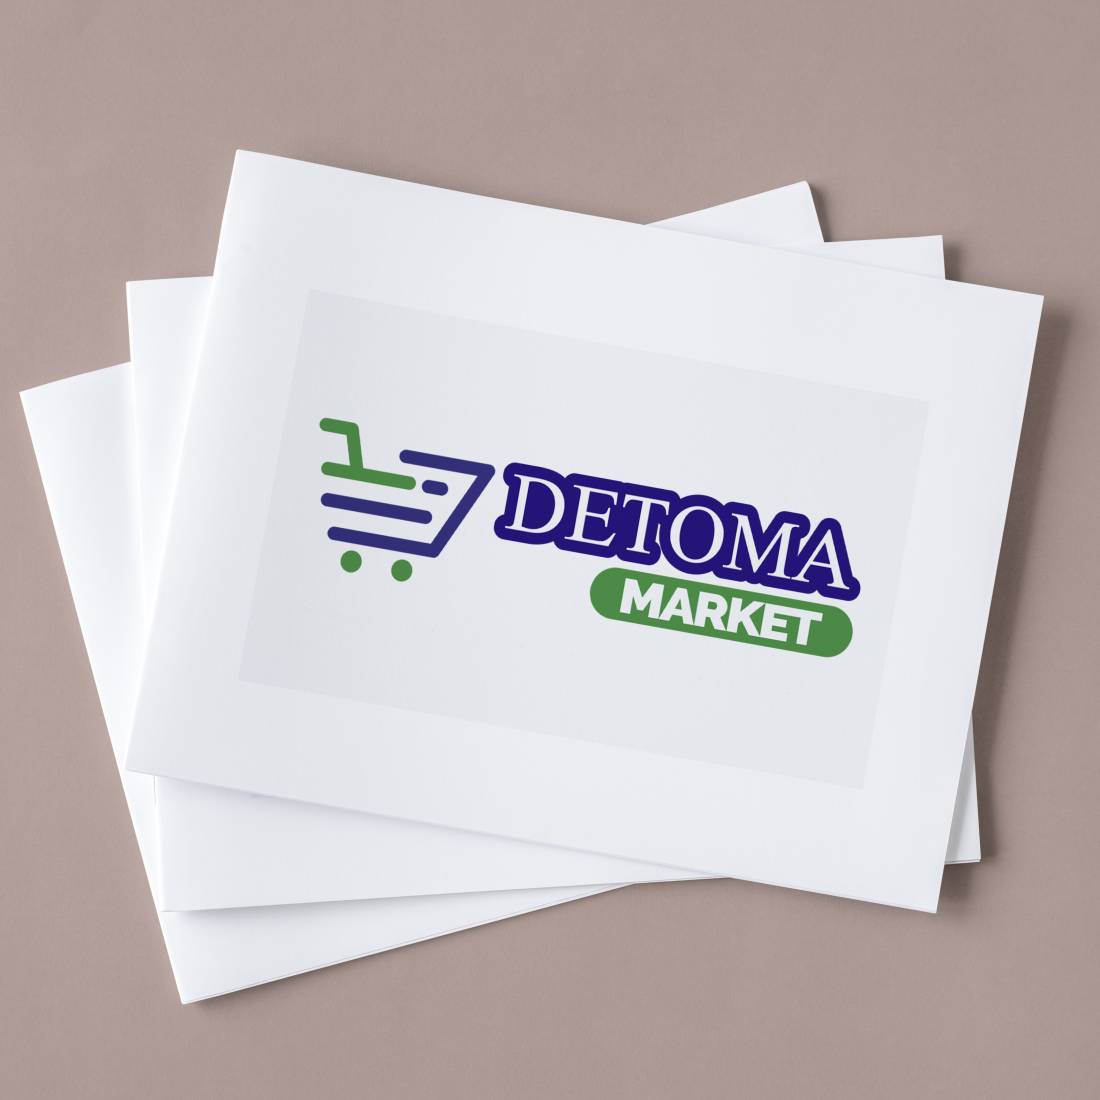 Te presentamos el nuevo isologotipo para Detoma Market